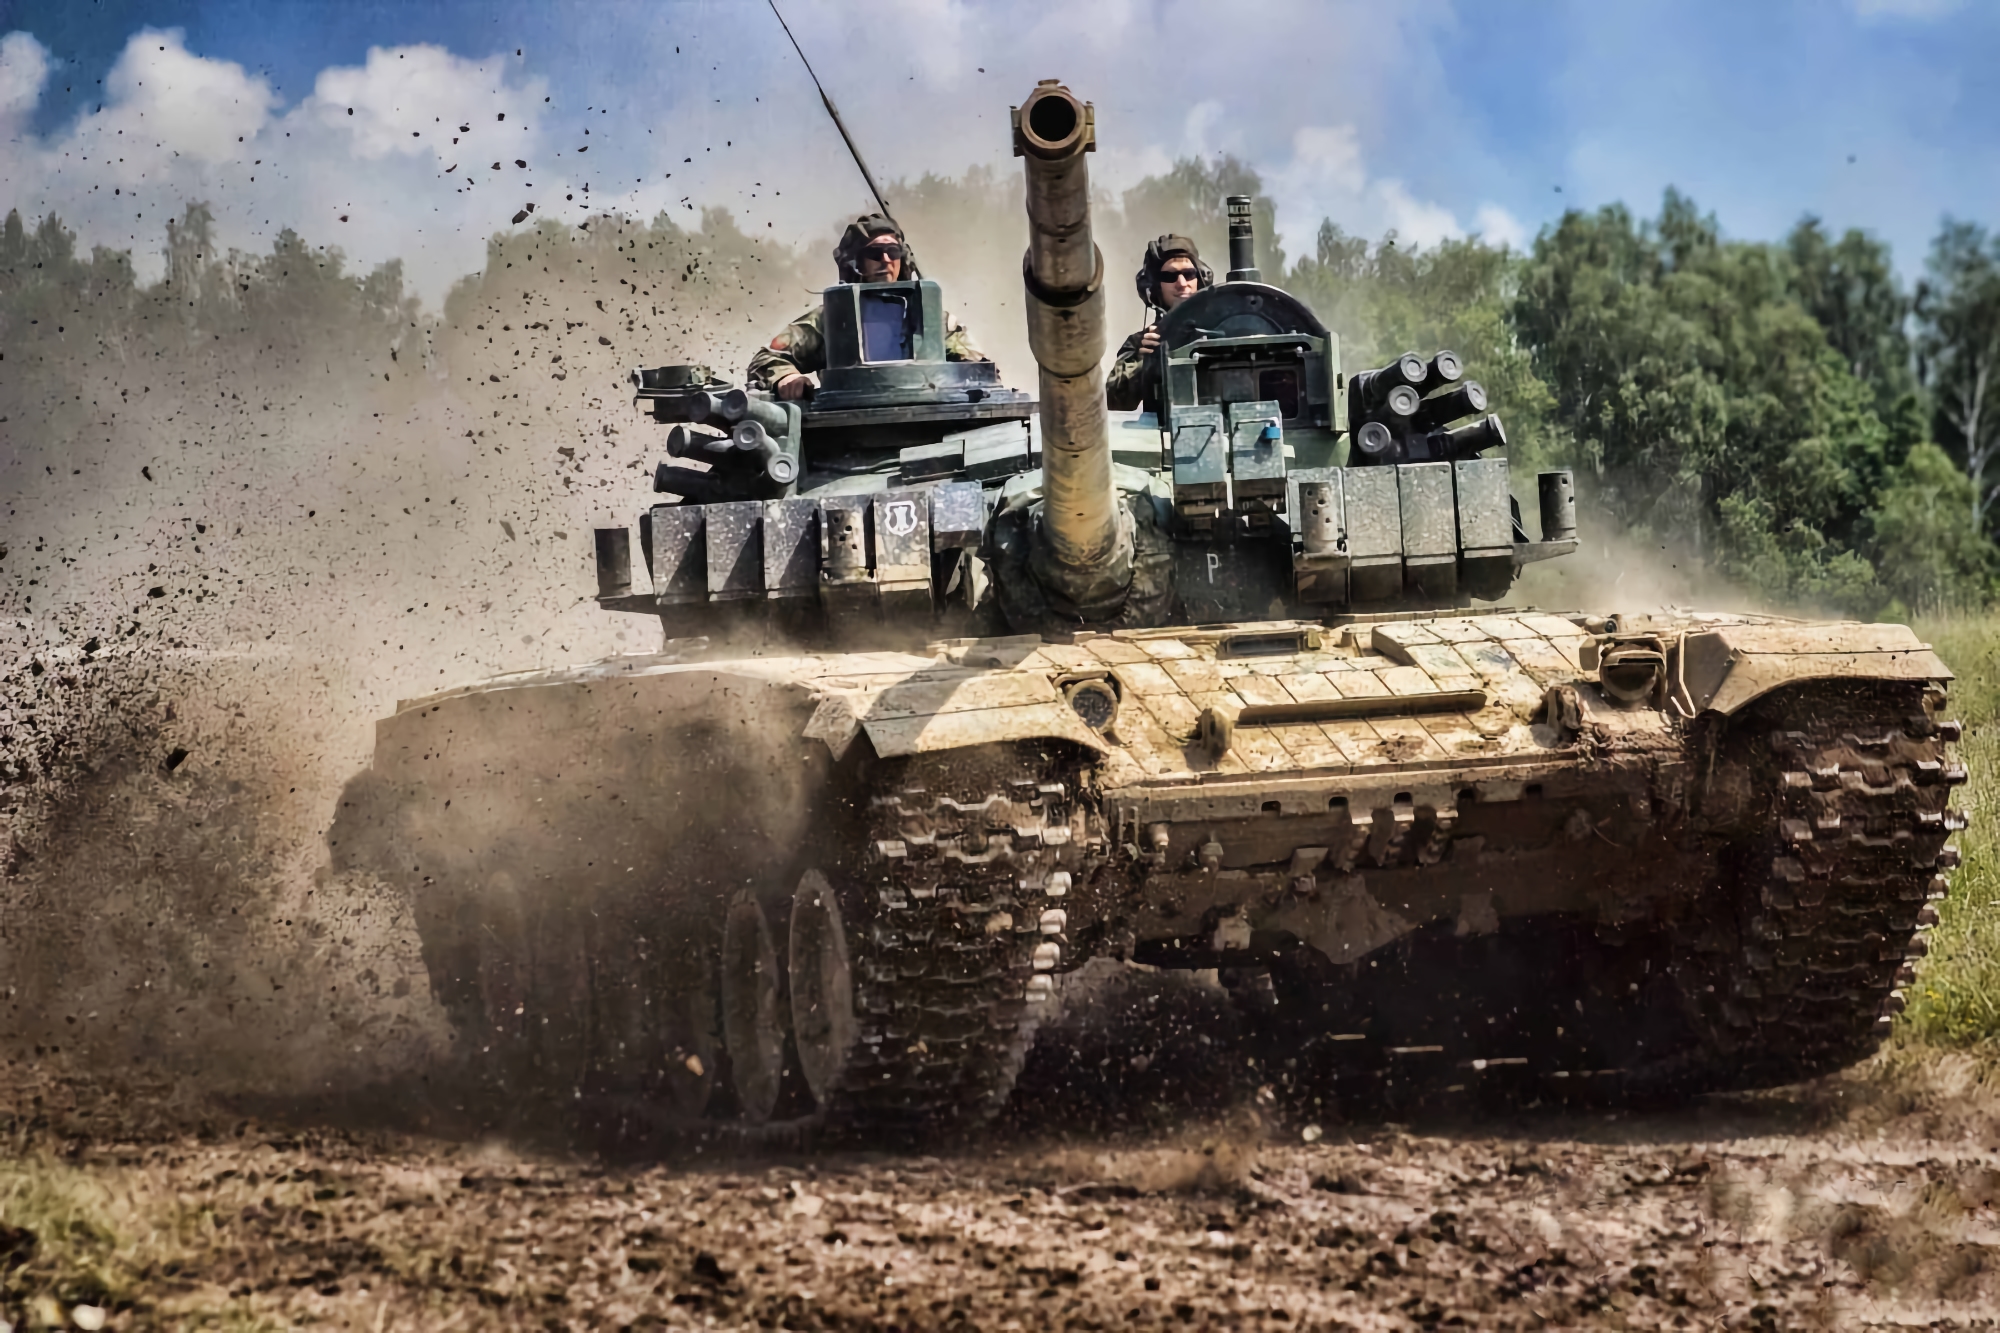 Les Tchèques ont collecté 1 300 000 dollars pour acheter le char T-72 Avenger pour l'Ukraine, une version améliorée du T-72 avec un meilleur blindage et des communications modernes.